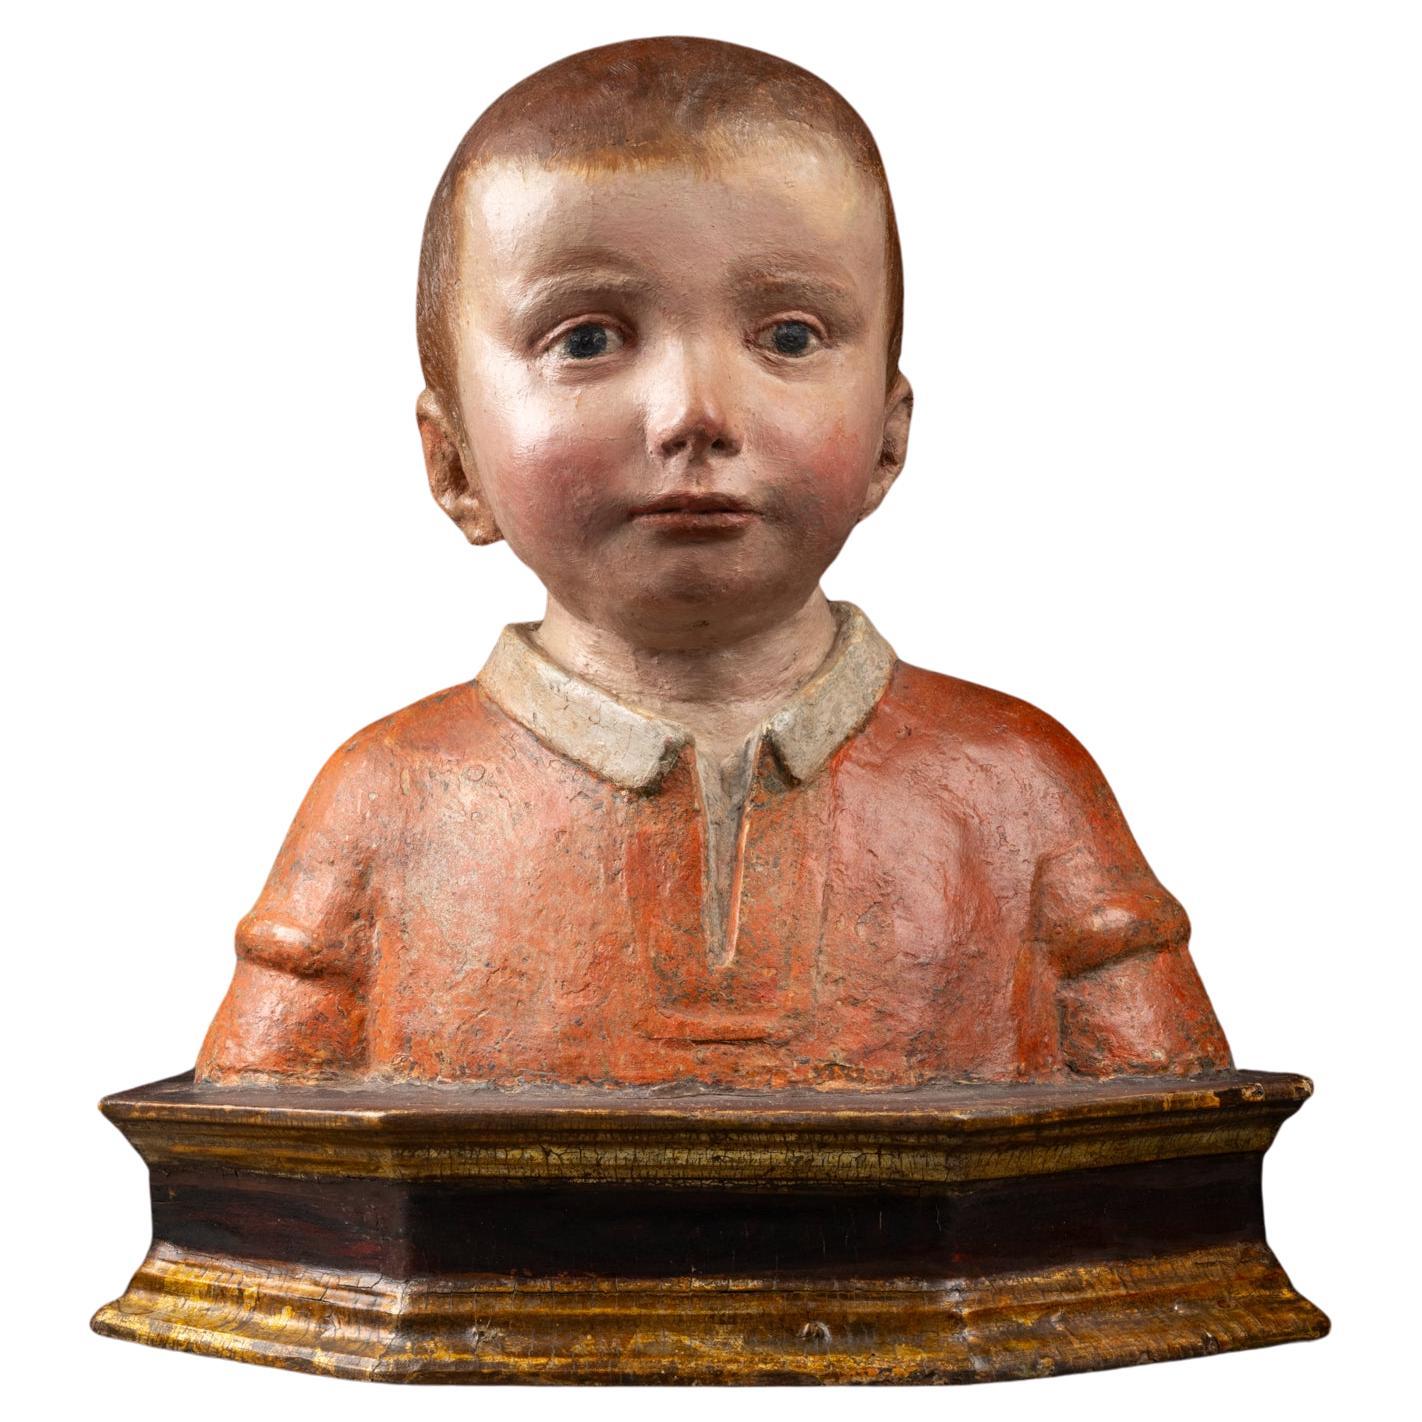 Antonio Rossellino (Settignano 1427 - Firenze 1479) - Bust of a young boy